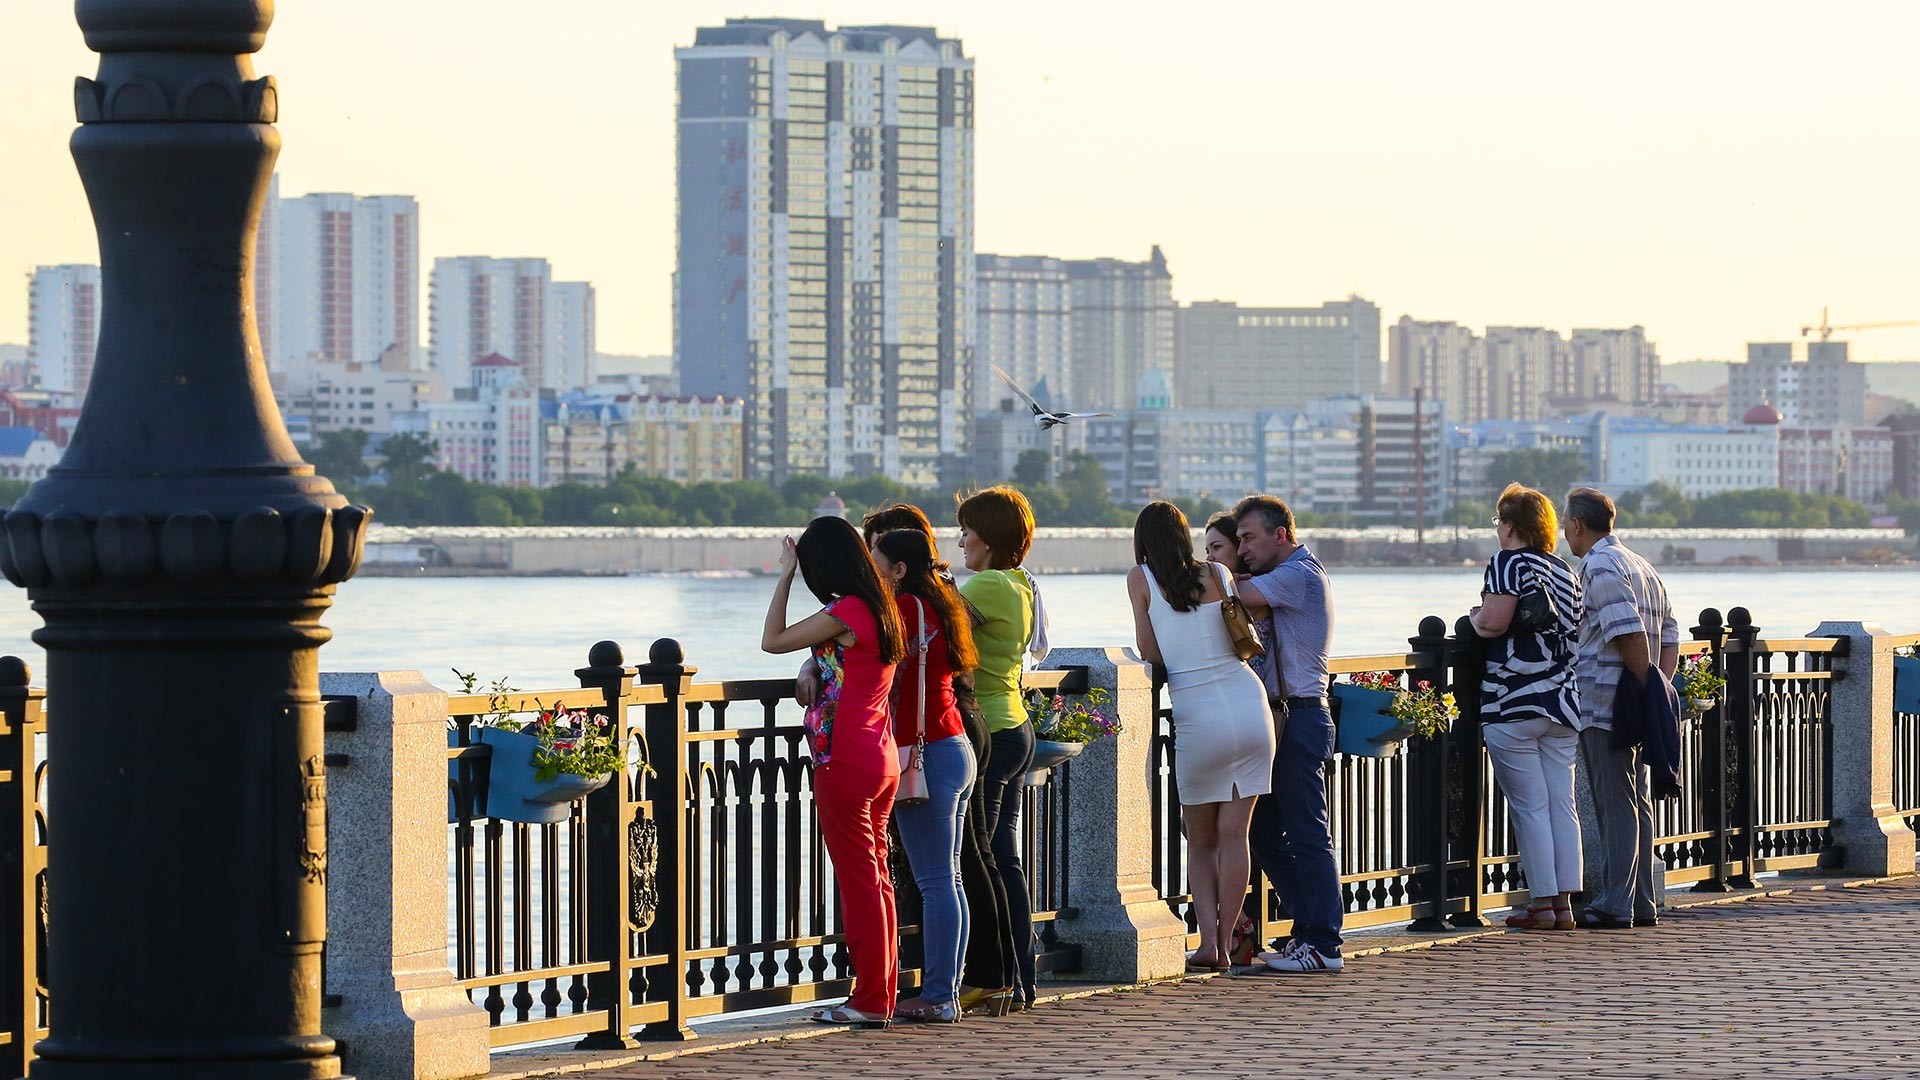 Blagoveschensk. Vista da margem do rio Amur e da cidade de Heihe (China)